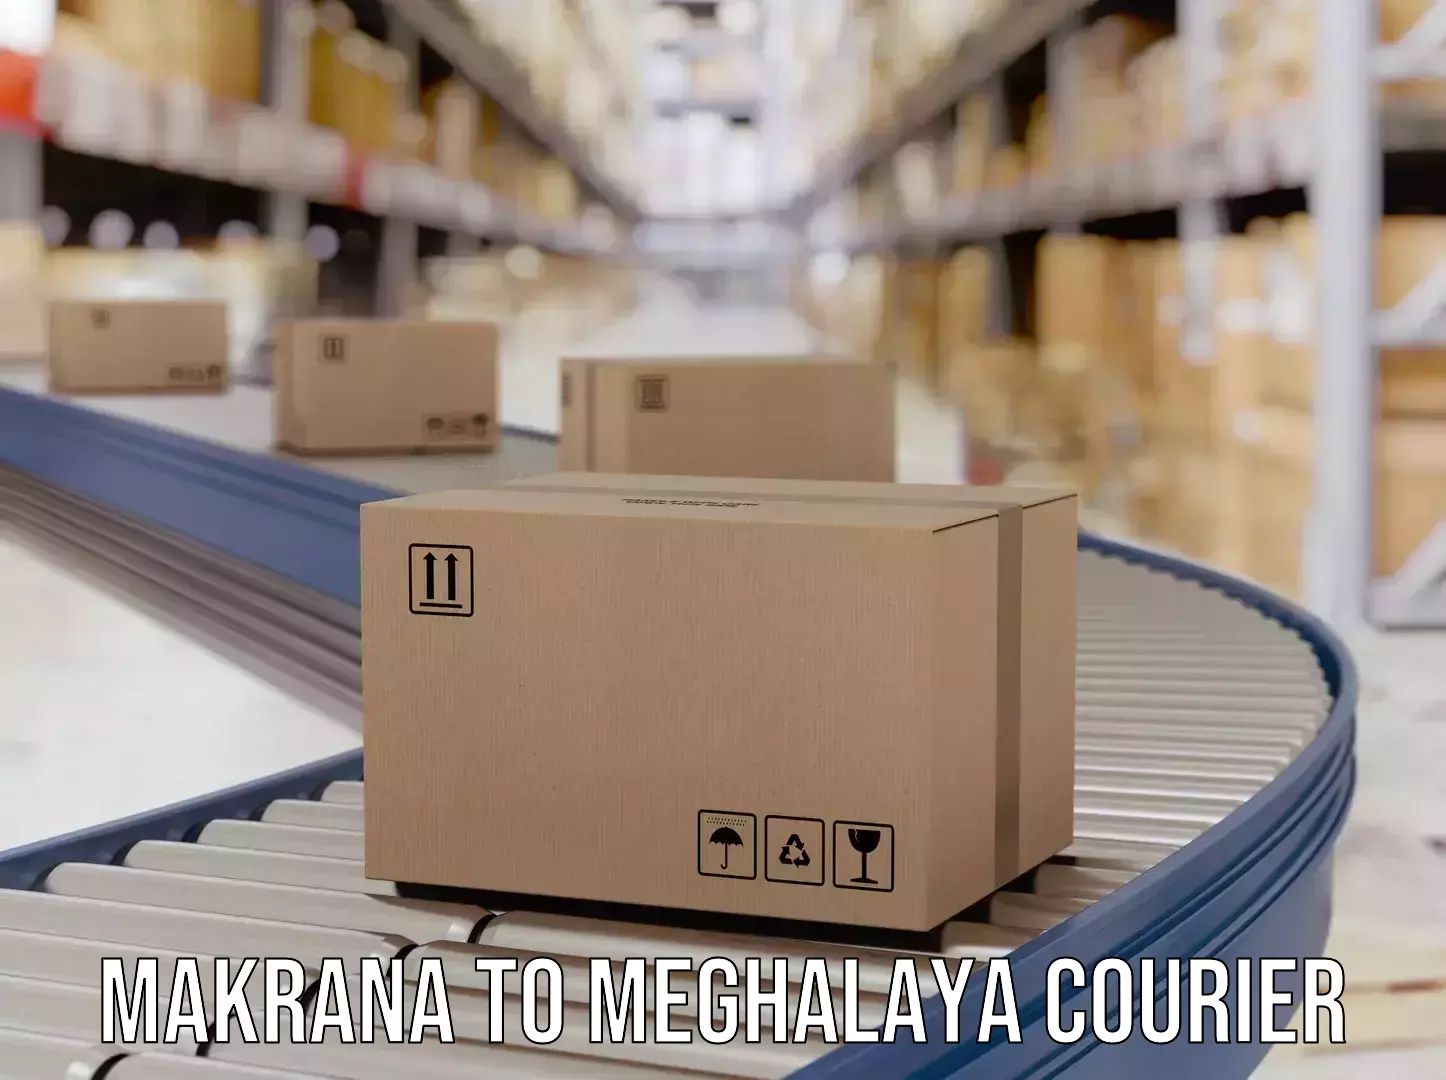 Efficient parcel service Makrana to Tikrikilla